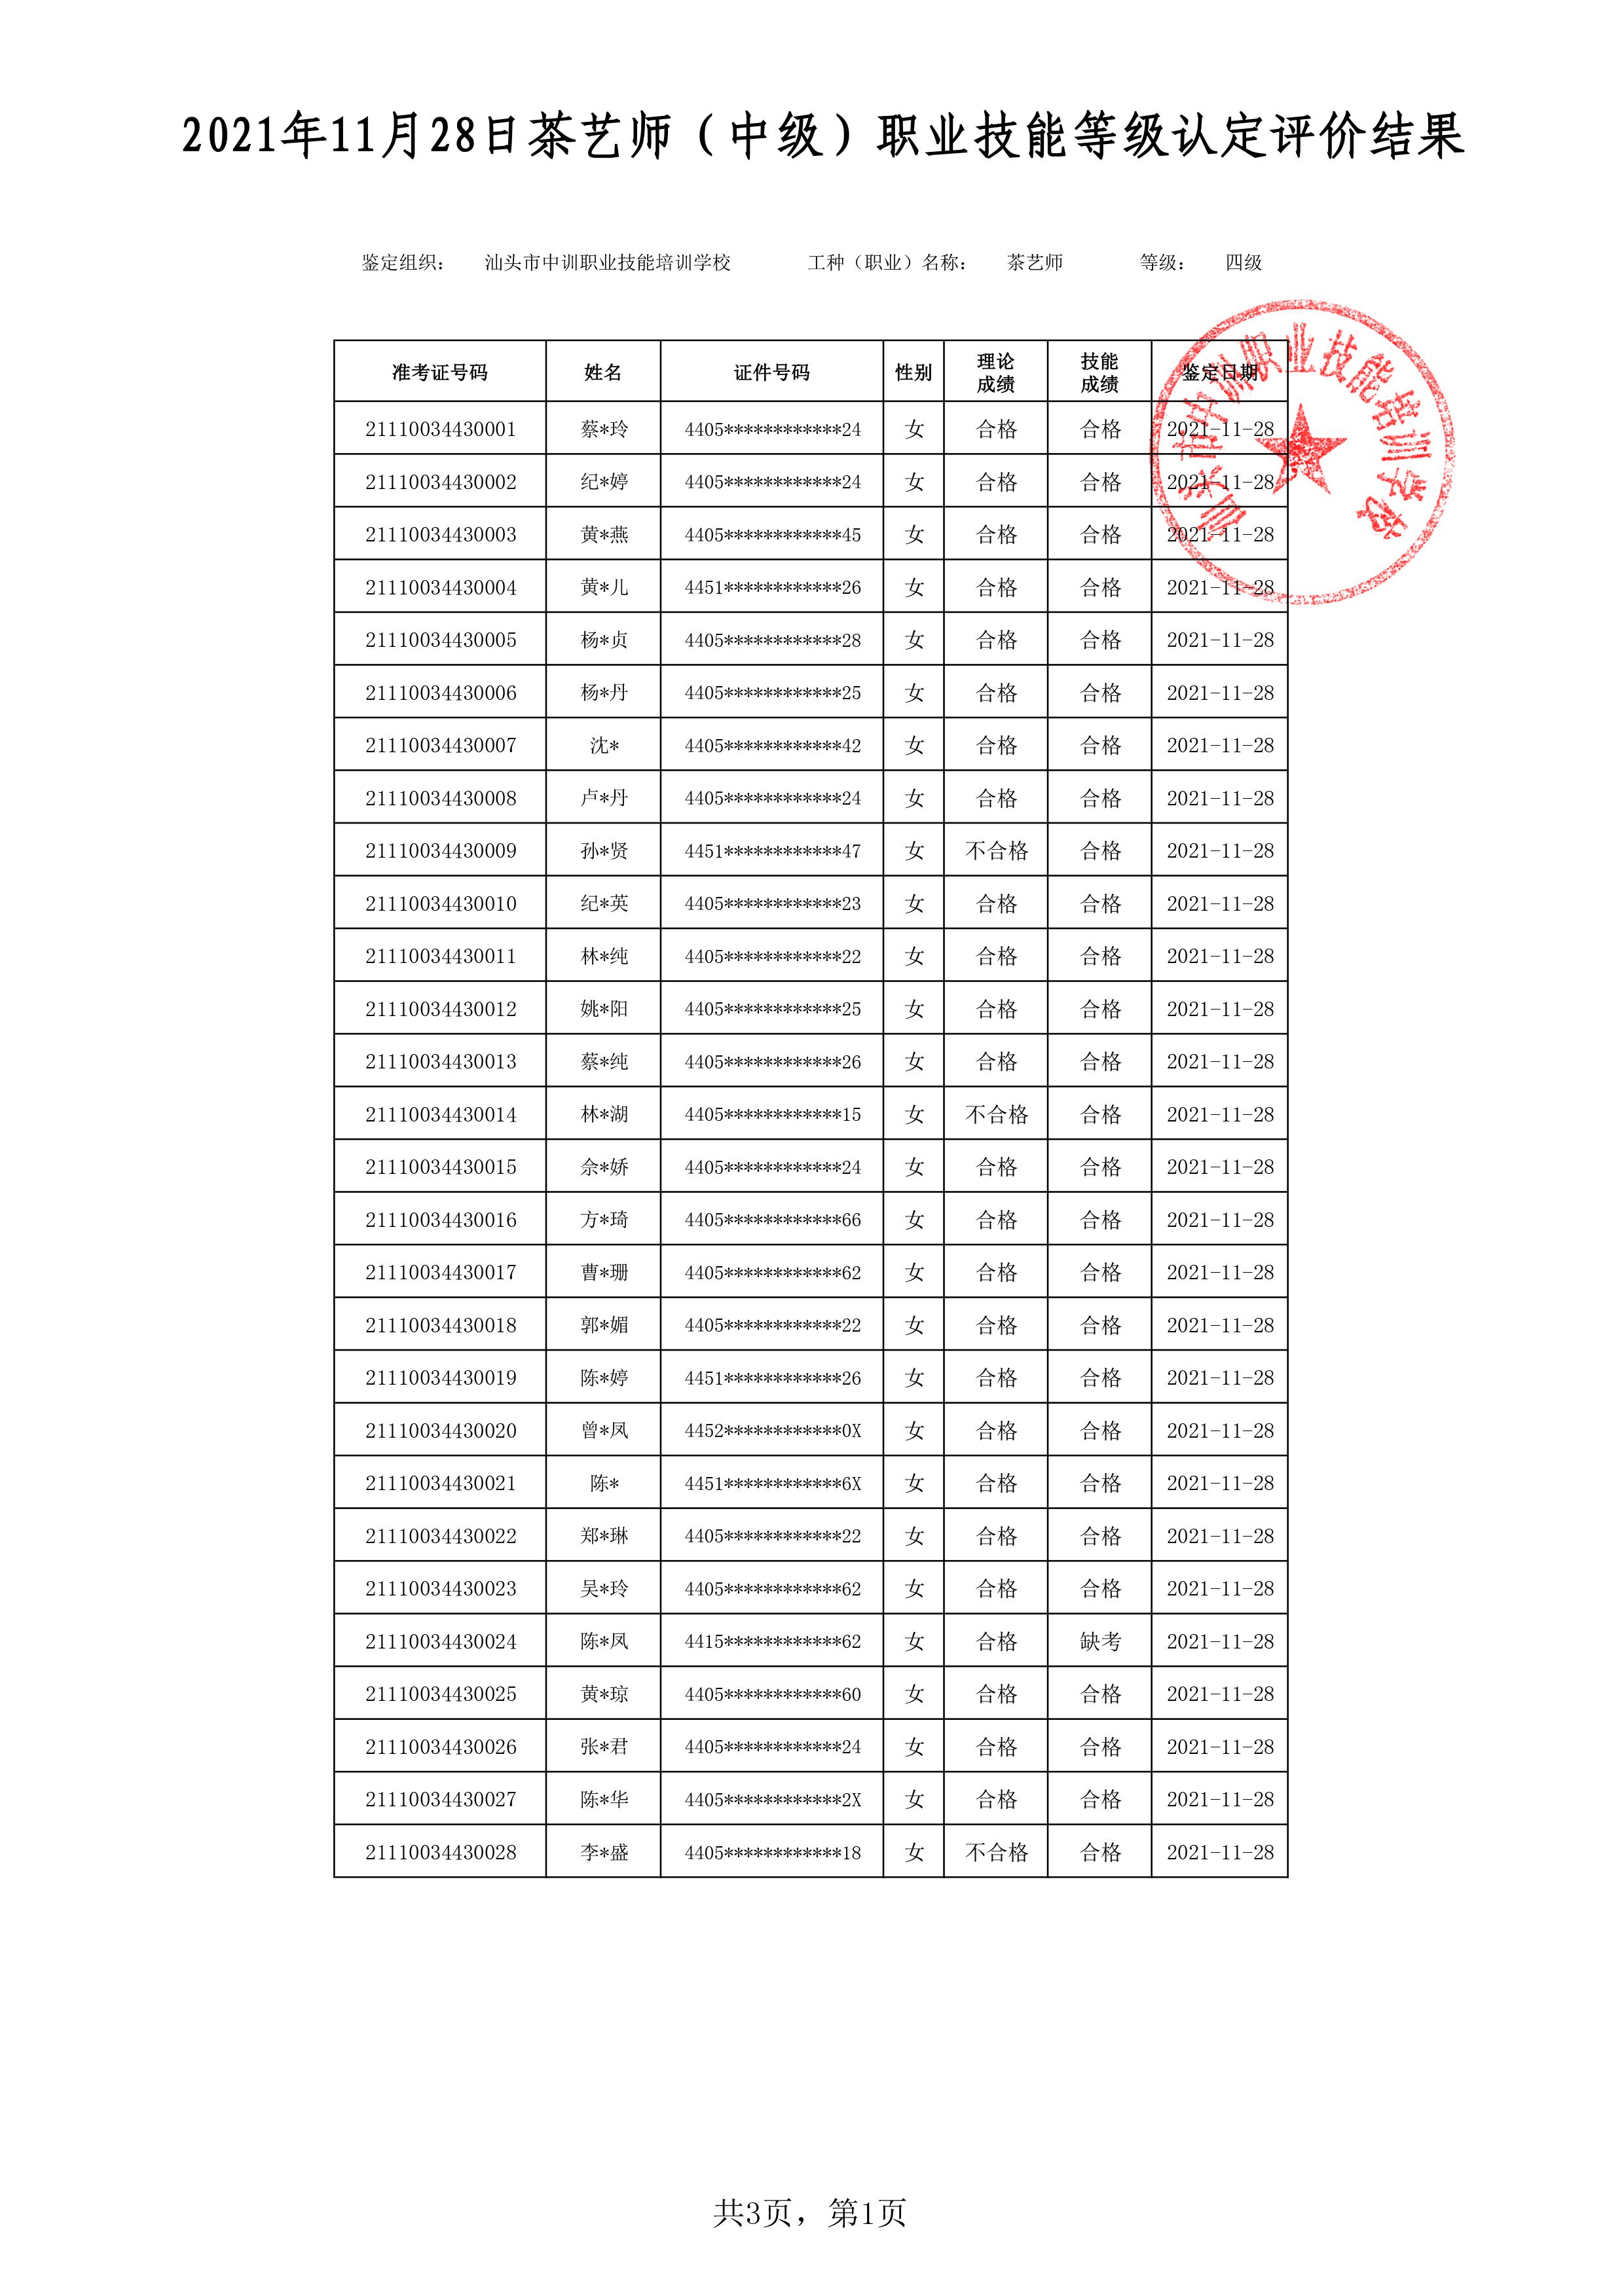 21-11-28四级茶艺师考试鉴定名册表-1 副本.jpg